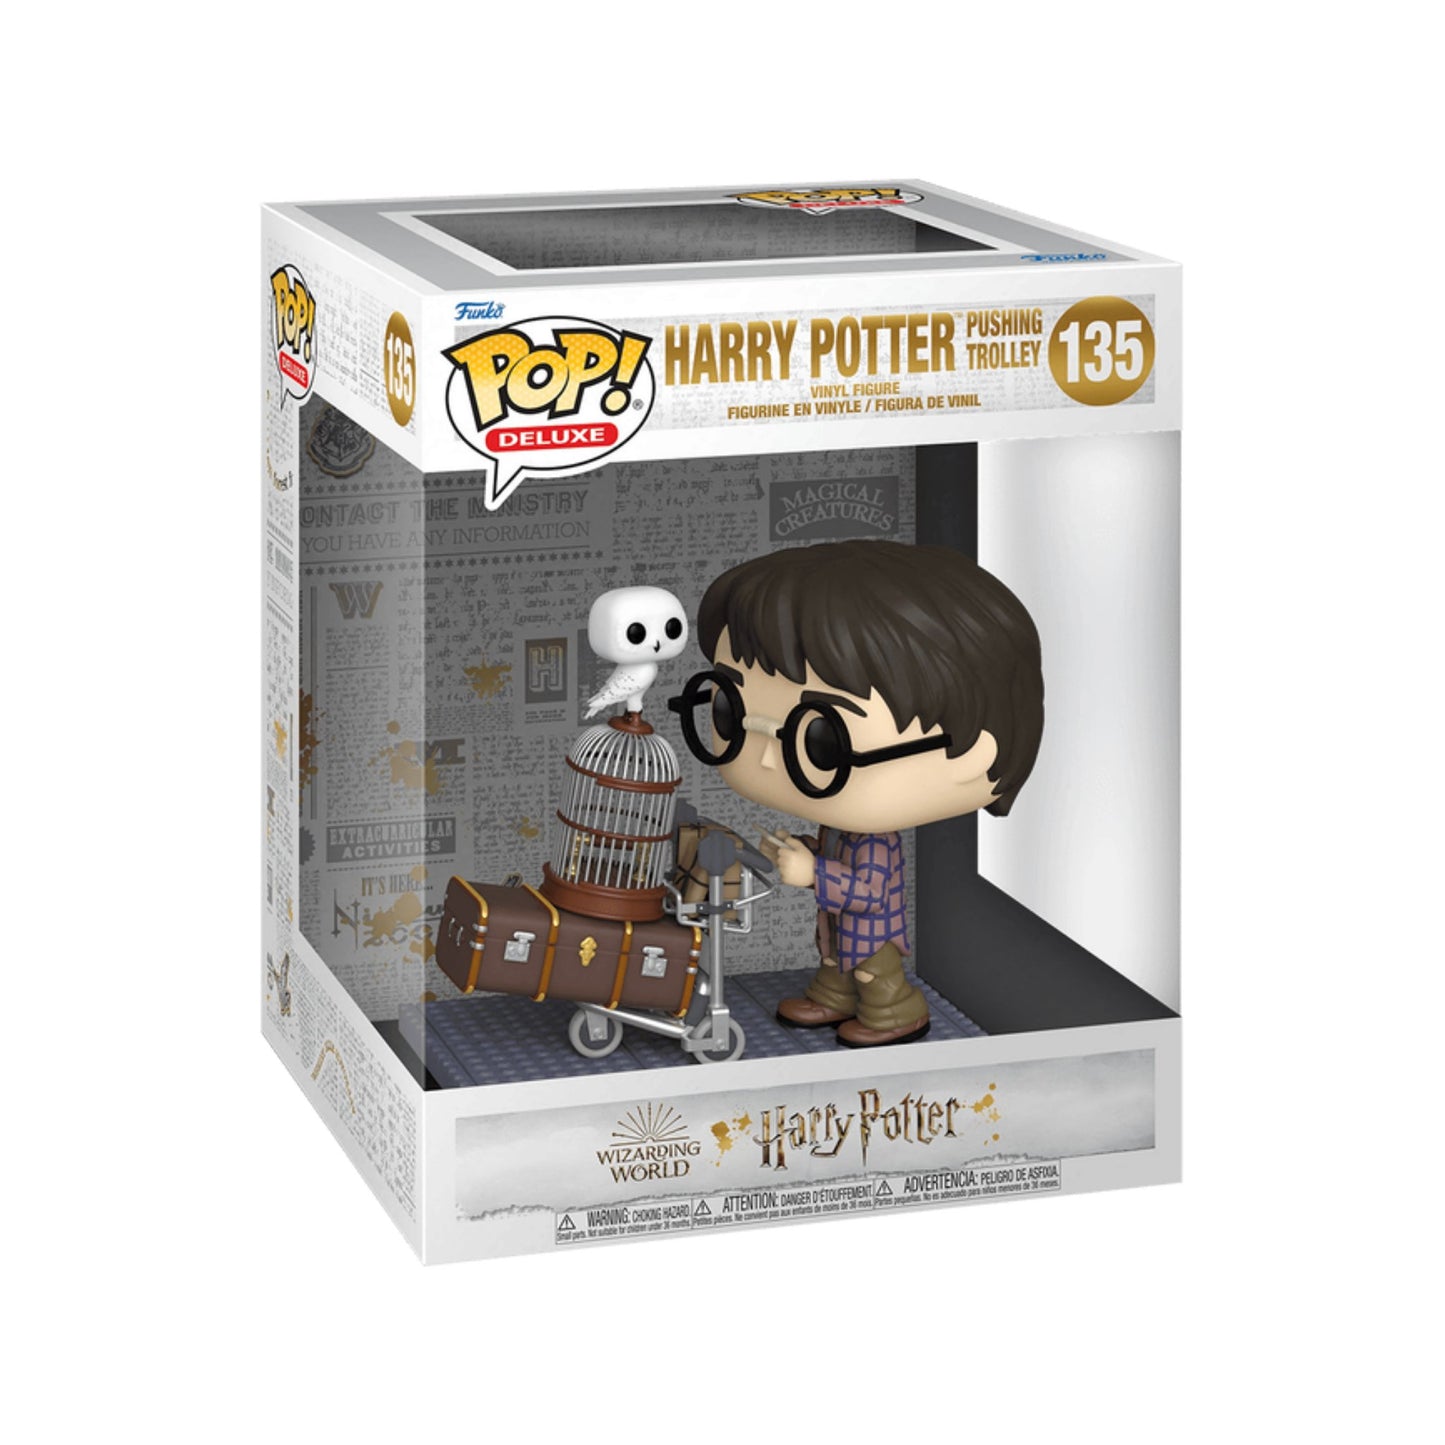 Funko Pop Harry Potter Pushing Trolley #135 - Harry Potter